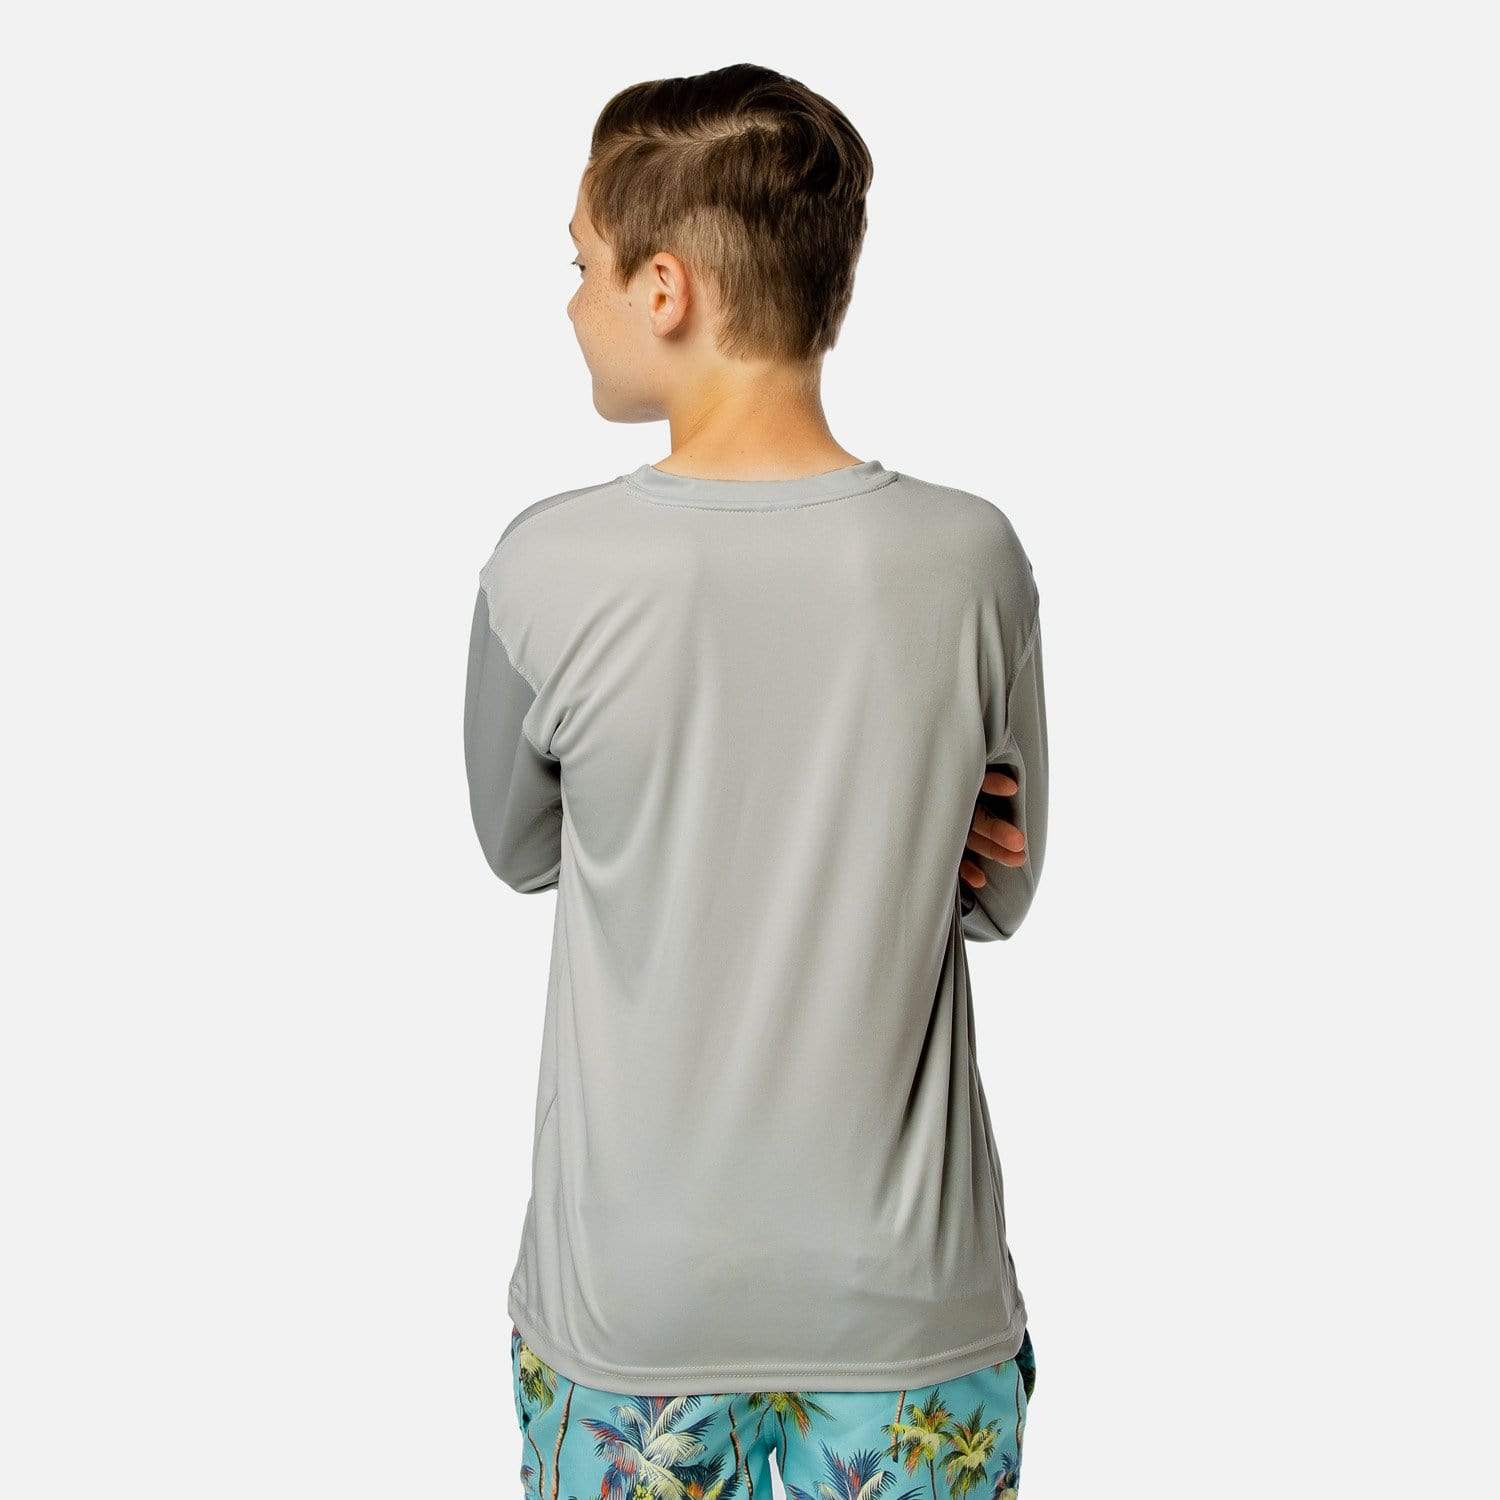 Vapor Apparel Sun Protection Youth Solar Long Sleeve Shirt